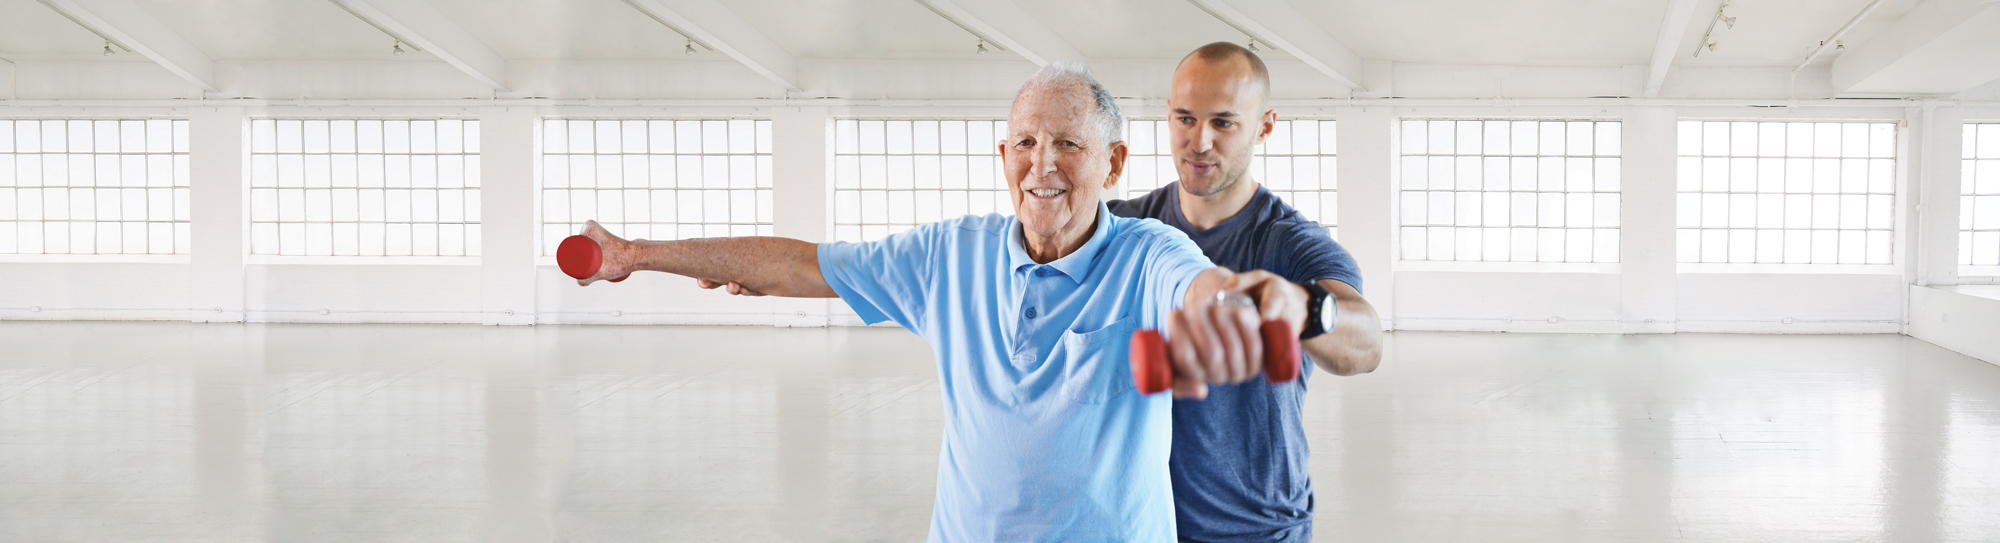 homme aidant une personne âgée à faire de l'exercice